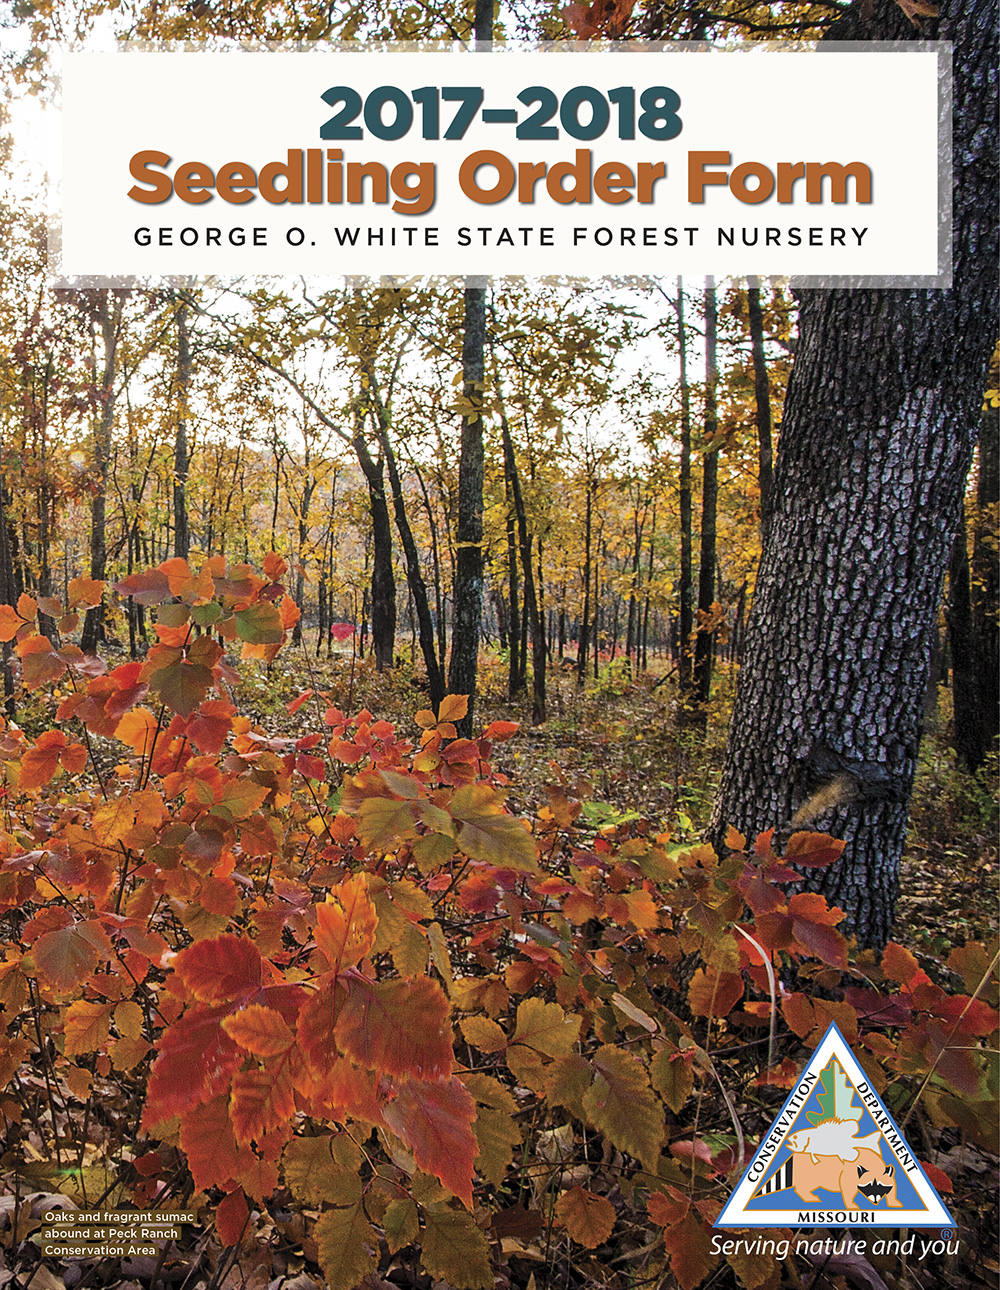 2017-2018 Seedling Order Form